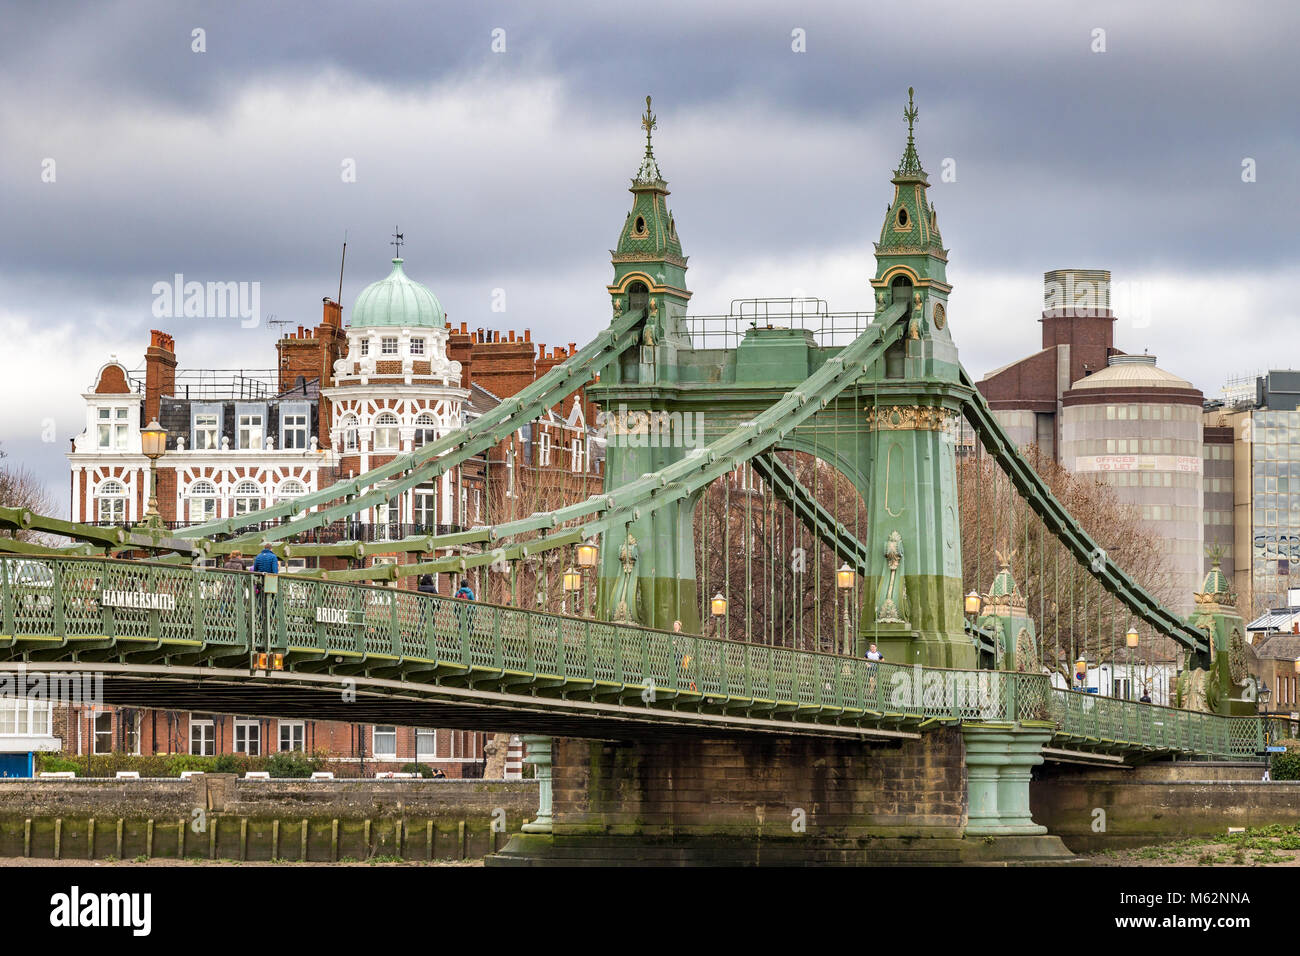 Die Hammersmith Bridge ist eine Hängebrücke, die Themse in Hammersmith, West London Kreuze Stockfoto